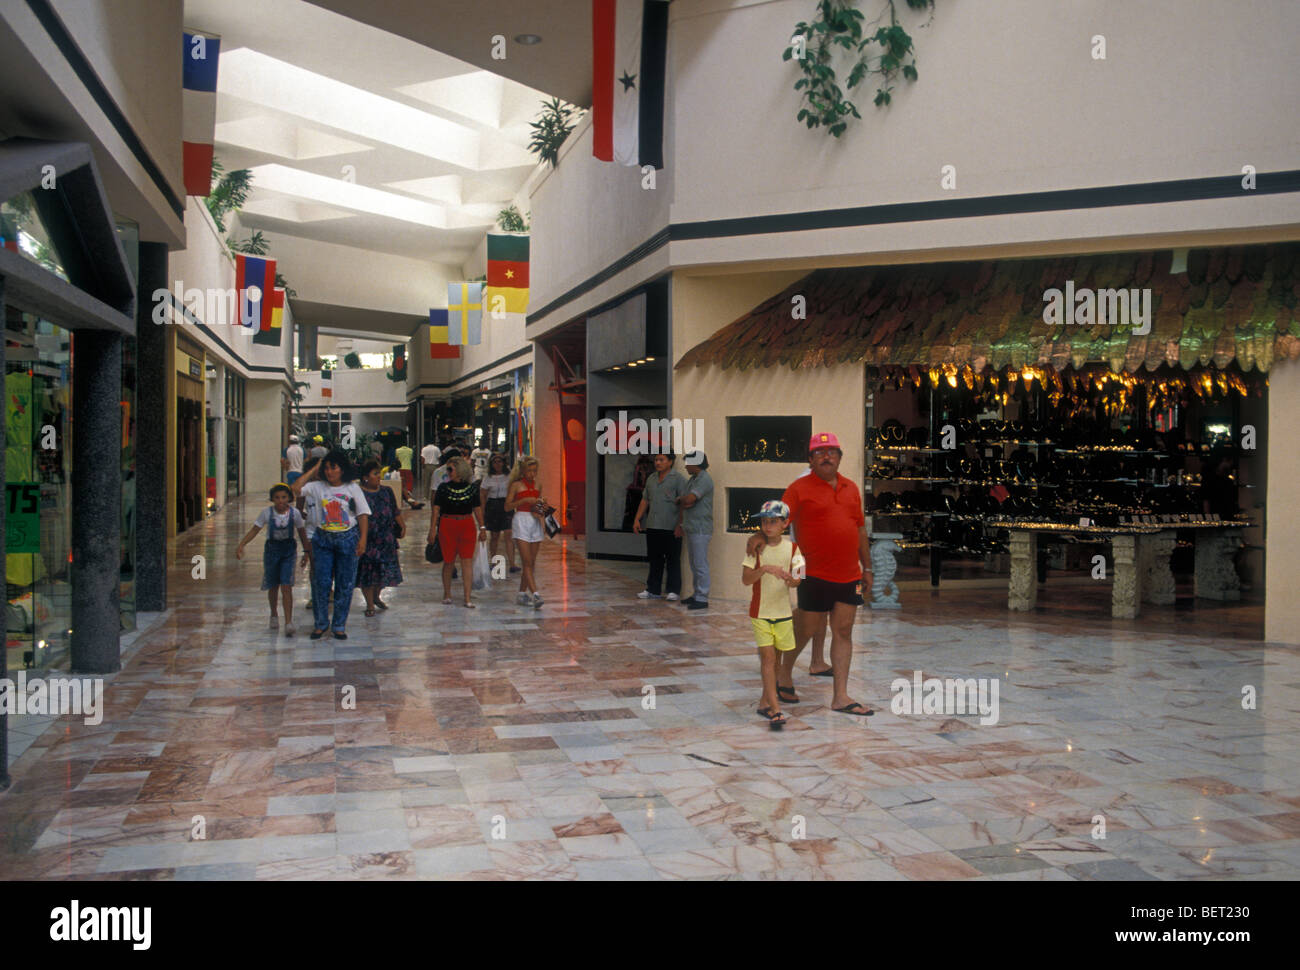 Plaza flamingo shopping mall fotografías e imágenes de alta resolución -  Alamy